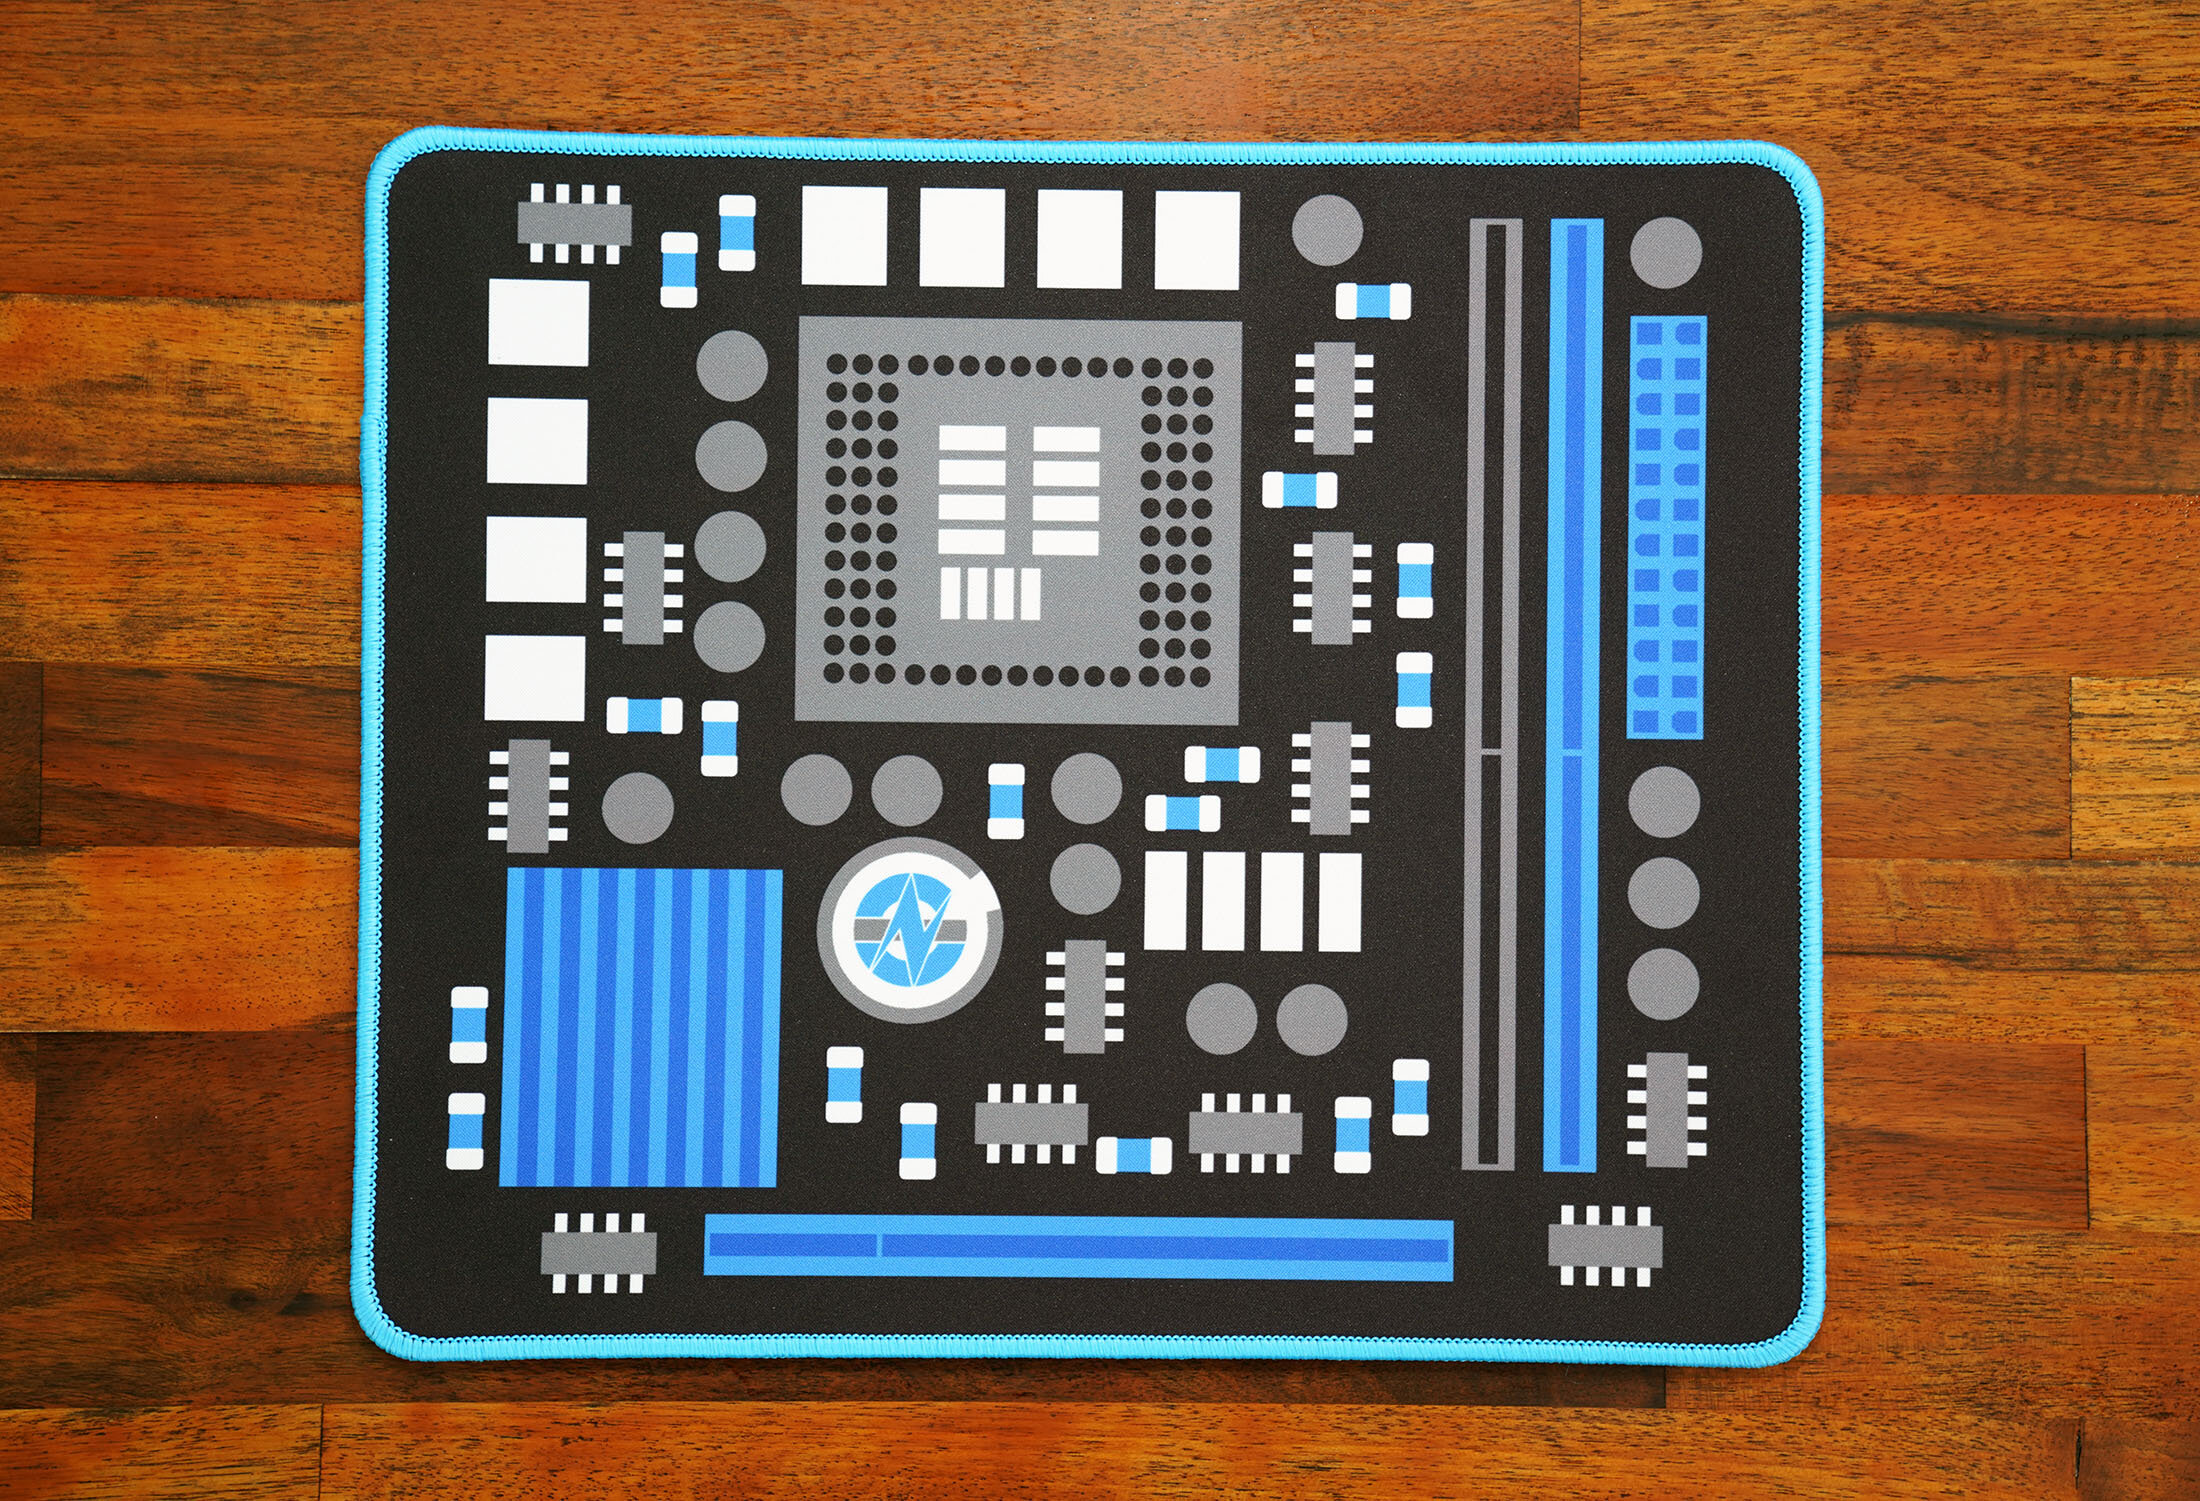 scherp Raap Hertellen GN 'Component' Blue/Black Microfiber Cloth Mousepad 12.5" x 10.5"  (317x267mm) — GamersNexus Official Store